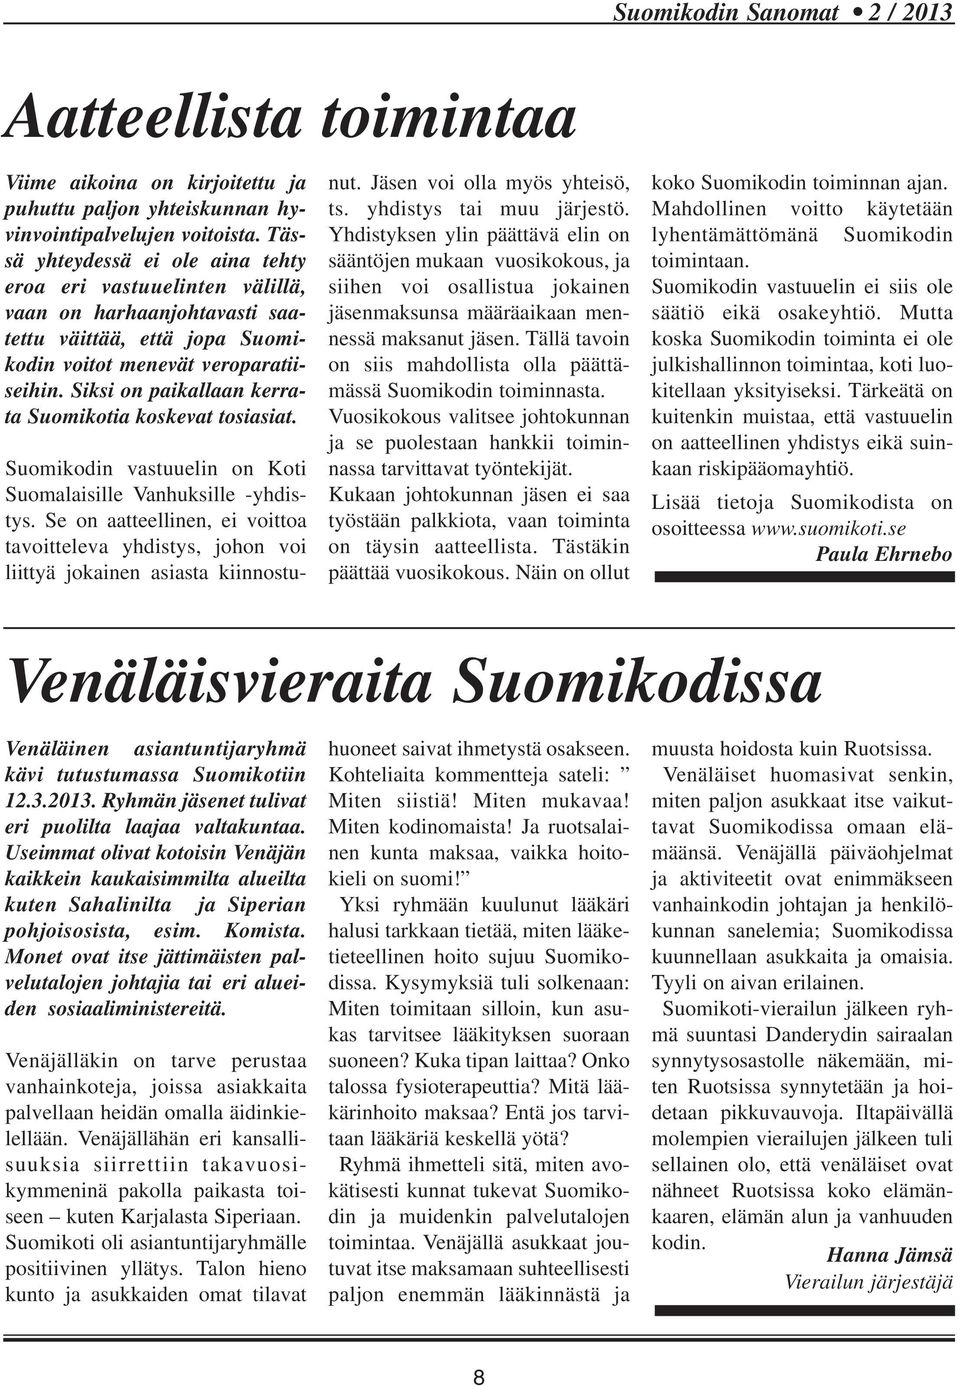 Siksi on paikallaan kerrata Suomikotia koskevat tosiasiat. Suomikodin vastuuelin on Koti Suomalaisille Vanhuksille -yhdistys.